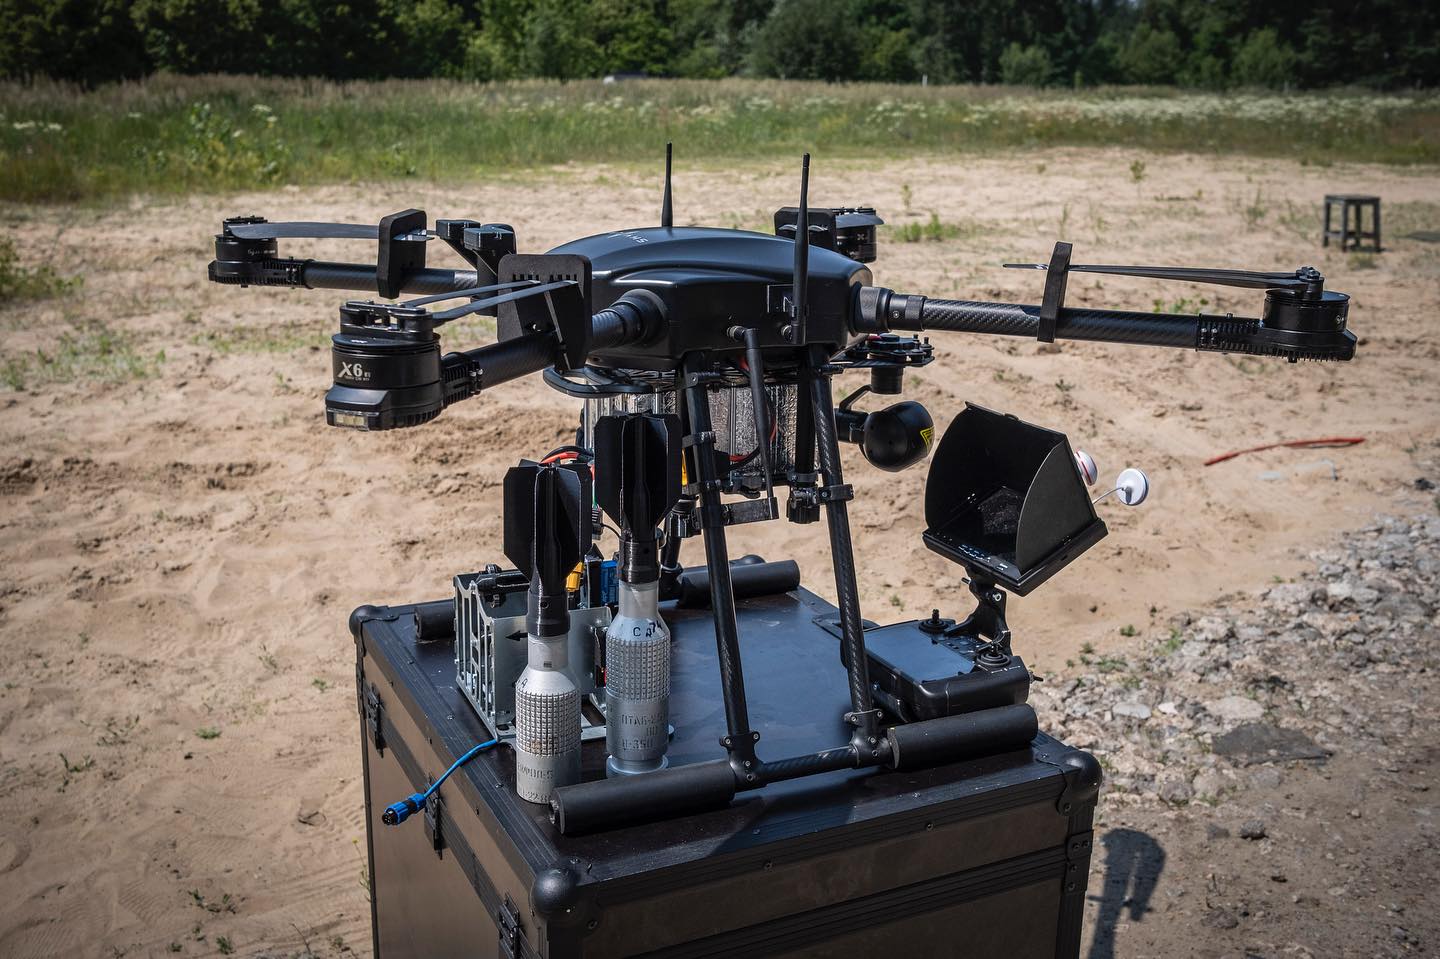 Ukraińska firma SkyLab zaprezentowała drona Shoolika mk6, który jest odporny na ataki elektroniczne